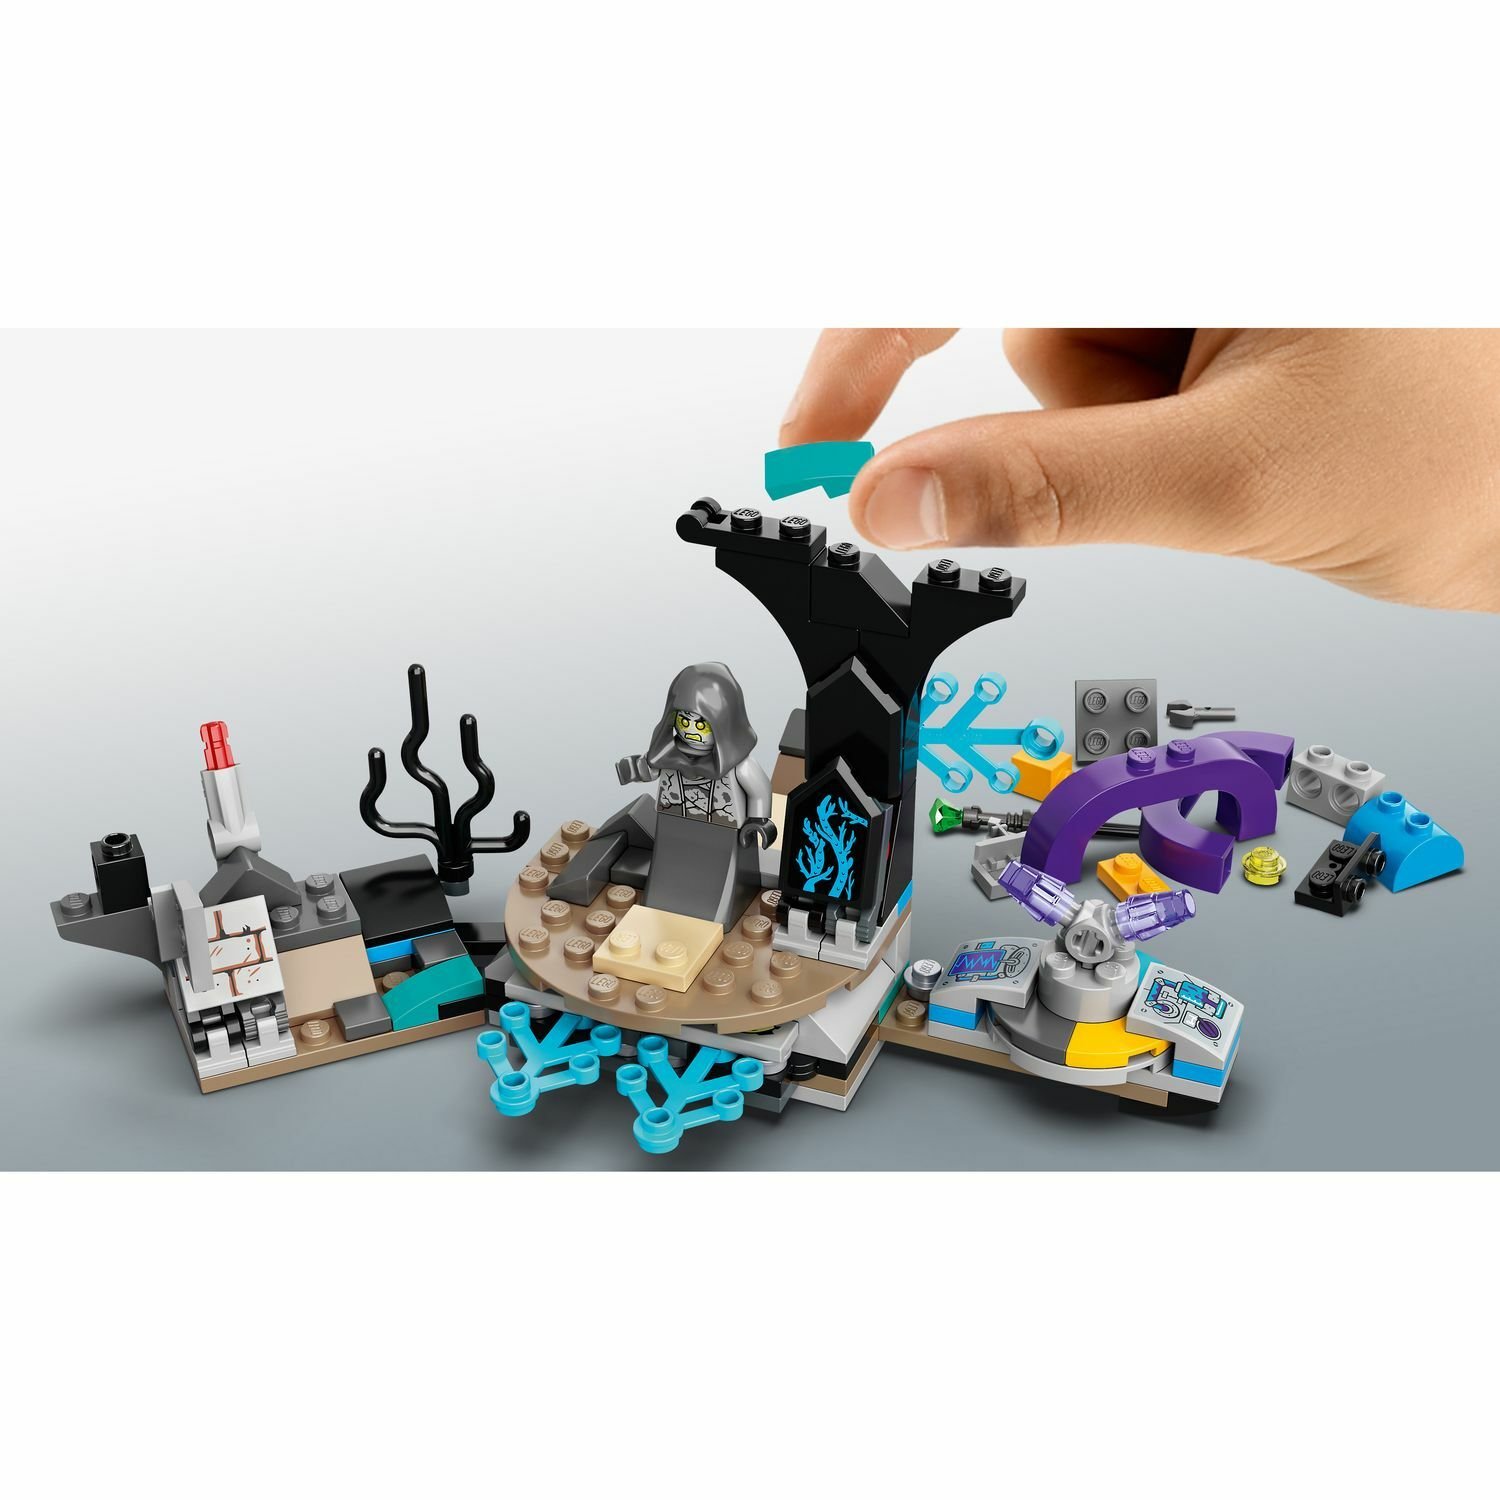 Lego Hidden Side 70433 Подводная лодка Джей-Би